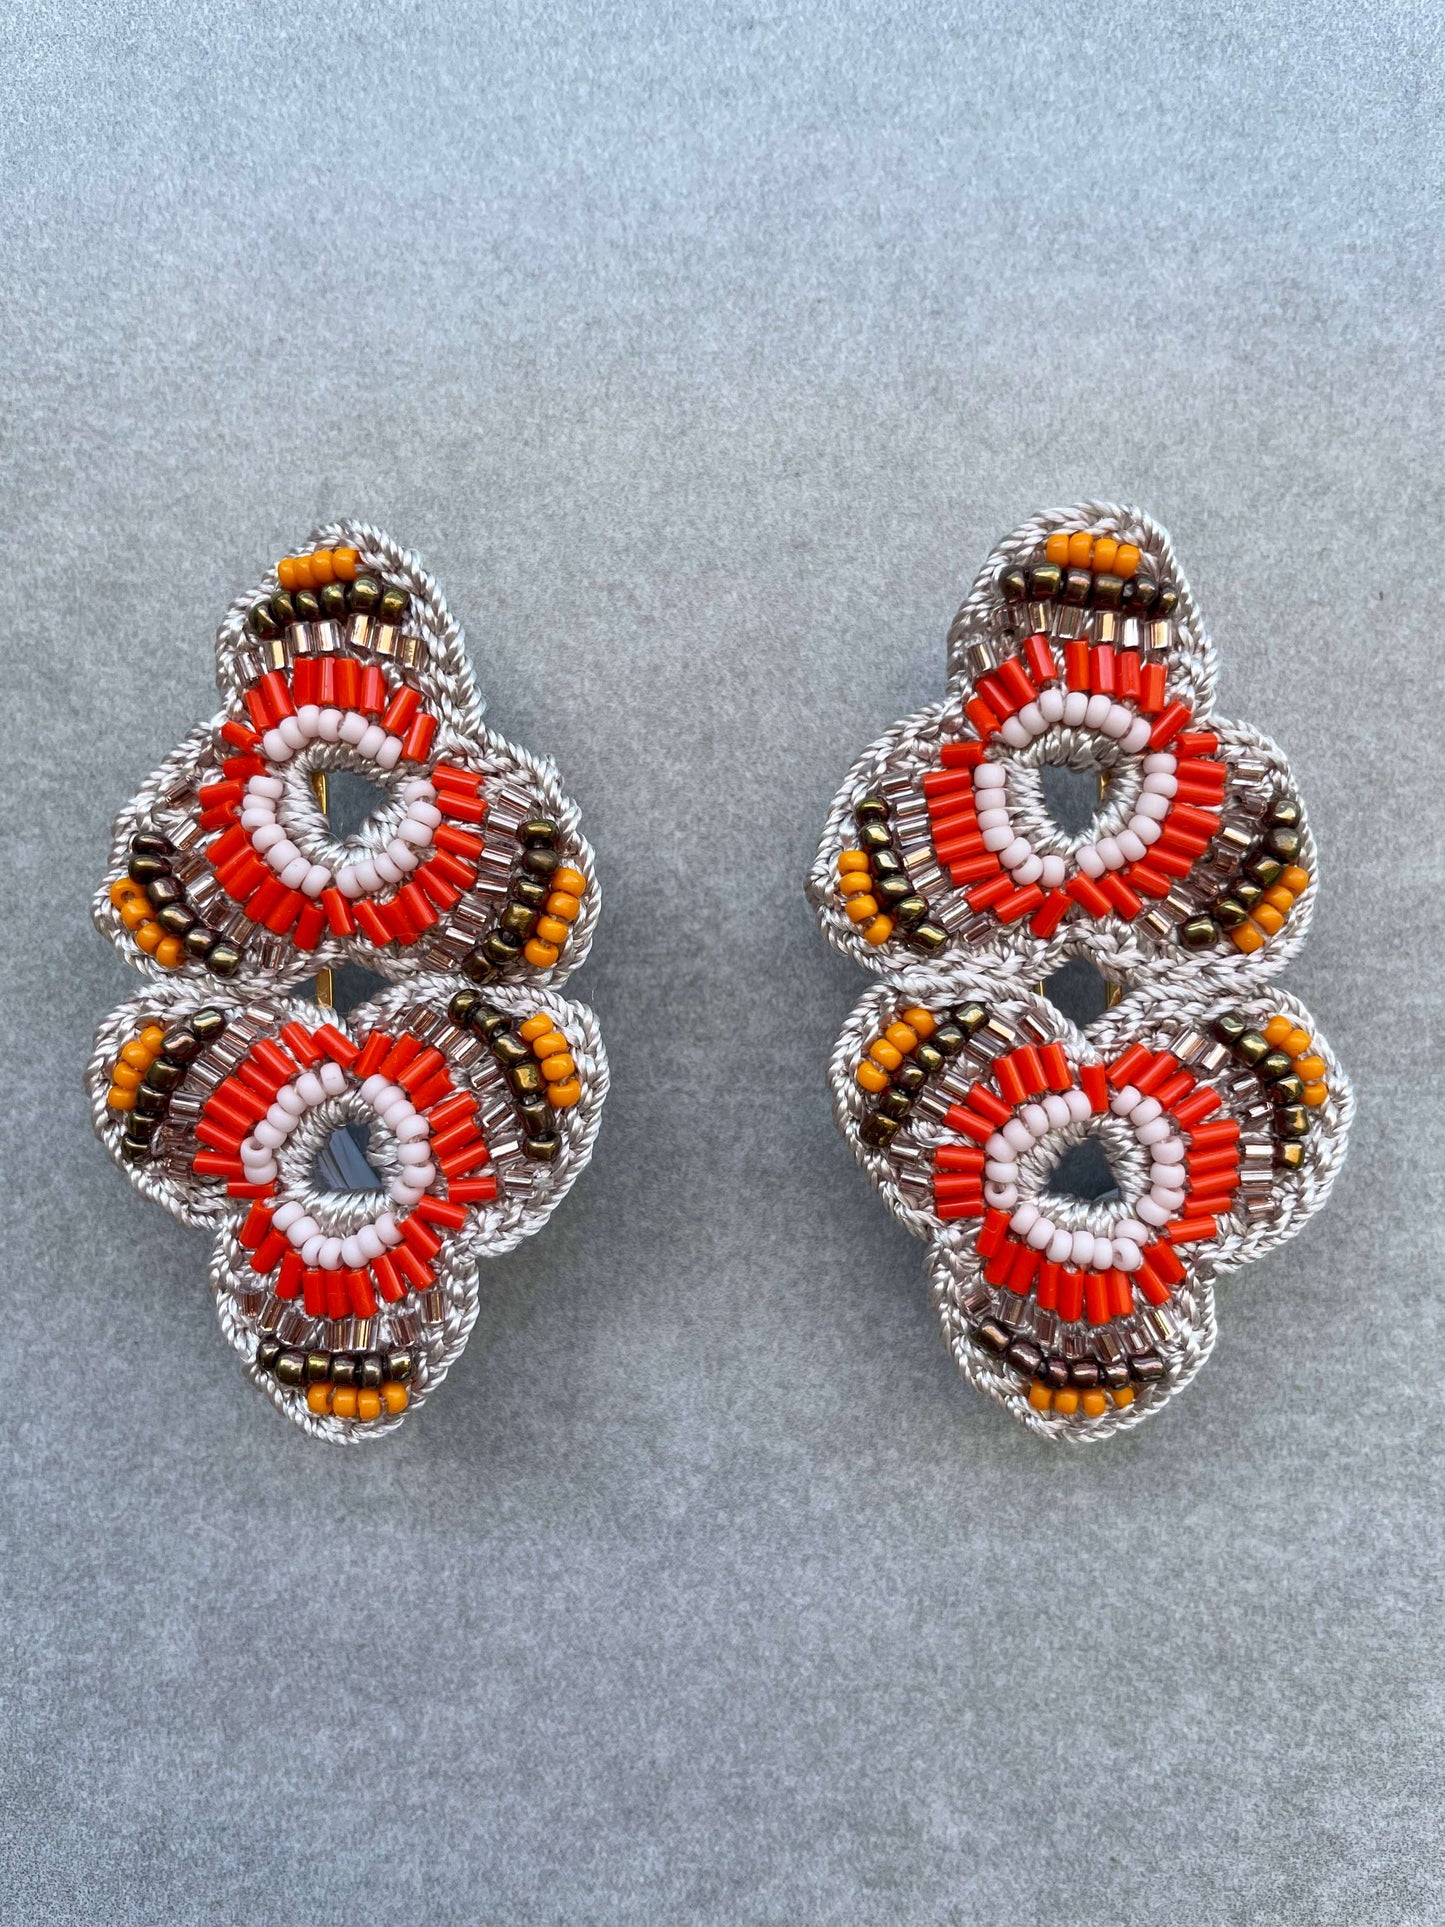 Bead Embroidery Crochet Clover Earrings by Seyyah